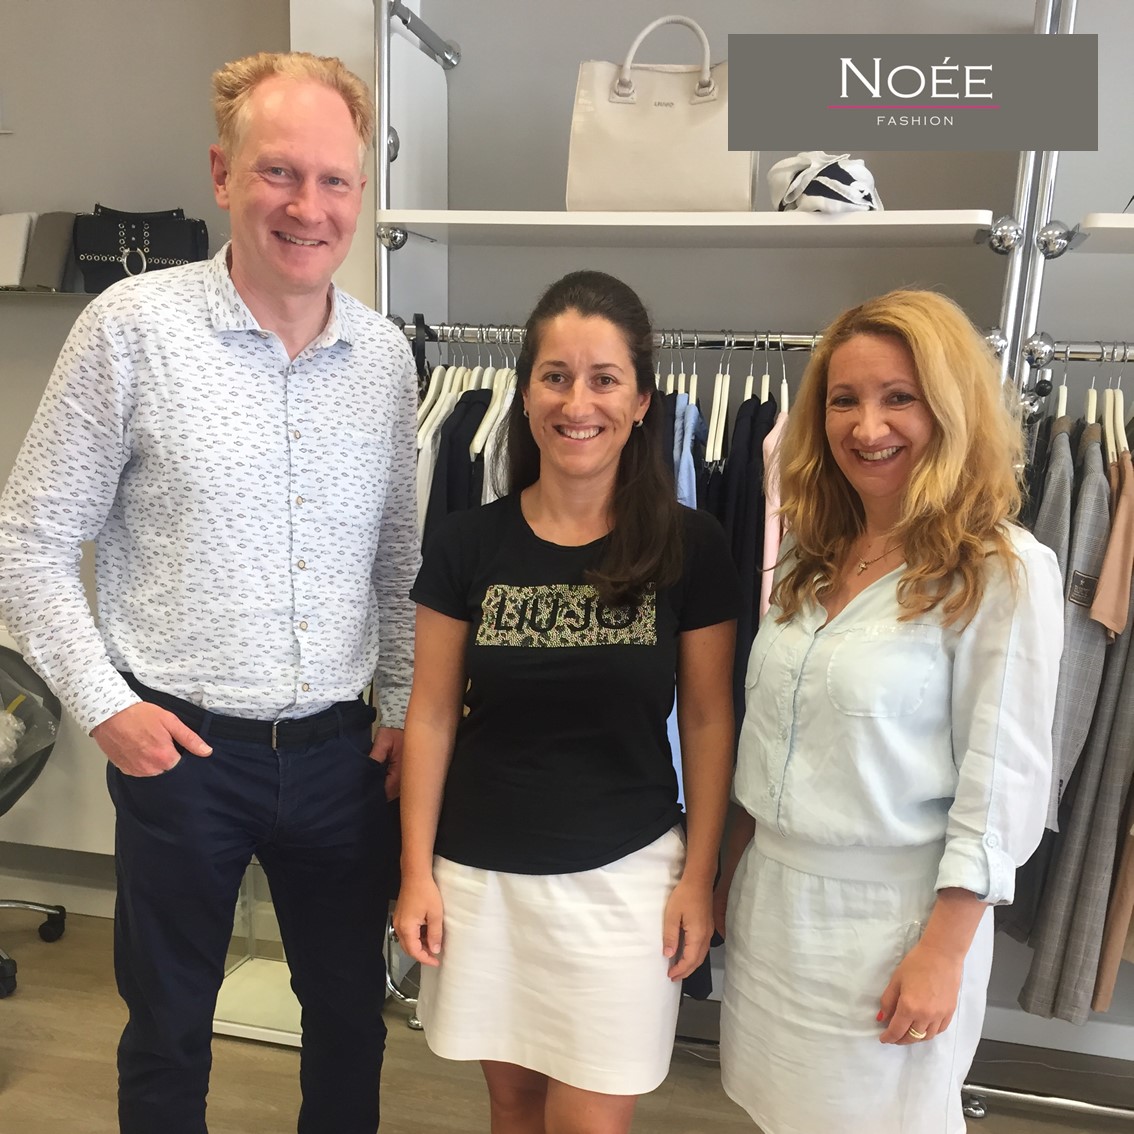 Marijana und Michaela sind zwei Unternehmerinnen, wie sie im Buche stehen, mit allen Wassern gewaschen, Profis in ihrer Branche und immer auf dem neusten Stand der modischen Highlights. @noeefrankfurt steht für ein Multilabelkonzept mit international bekannten #Fashion #Labels.